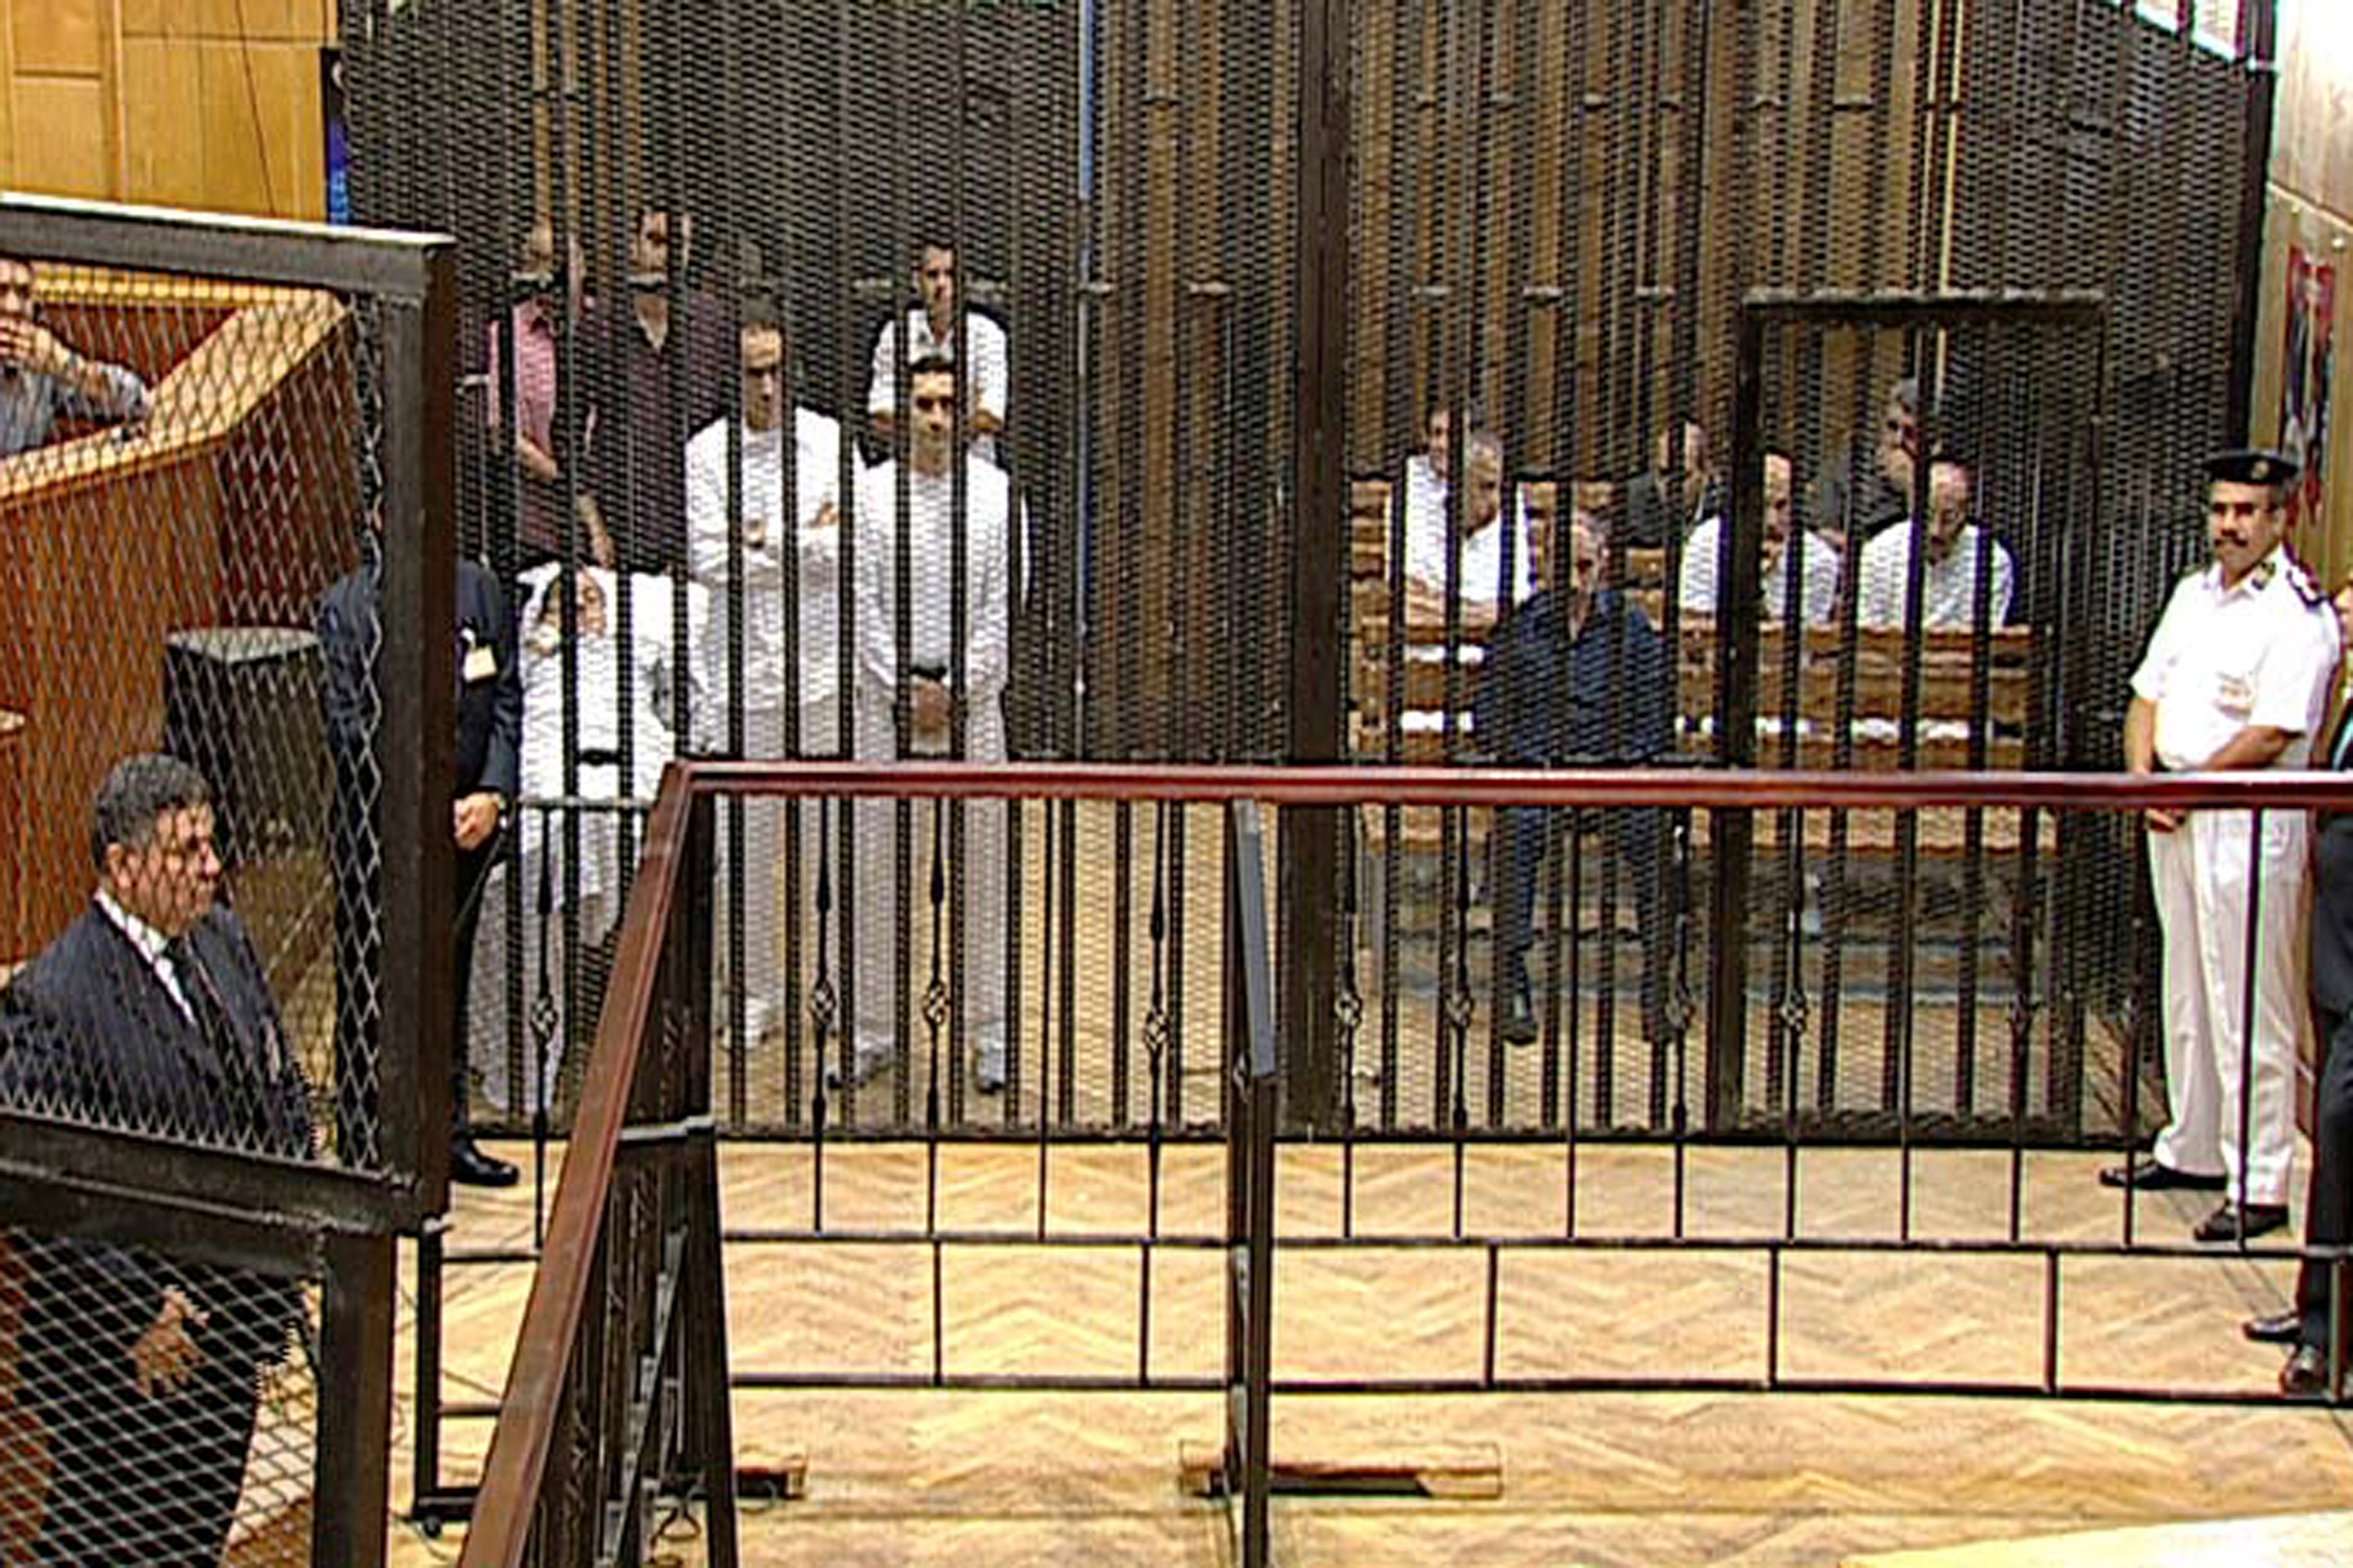 Los acusados, entre ellos el ex presidente egipcio Hosni Mubarak (en la cama, 2º izq.), sus dos hijos Gamal (de pie, con los brazos cruzados) y Alaa Mubarak, y el ex ministro del Interior Habib al-Adli (sentado en primera fila, de negro) asisten a su juicio en la Academia de Policía de El Cairo, Egipto, 3 de agosto de 2011 (REUTERS/Stringer)